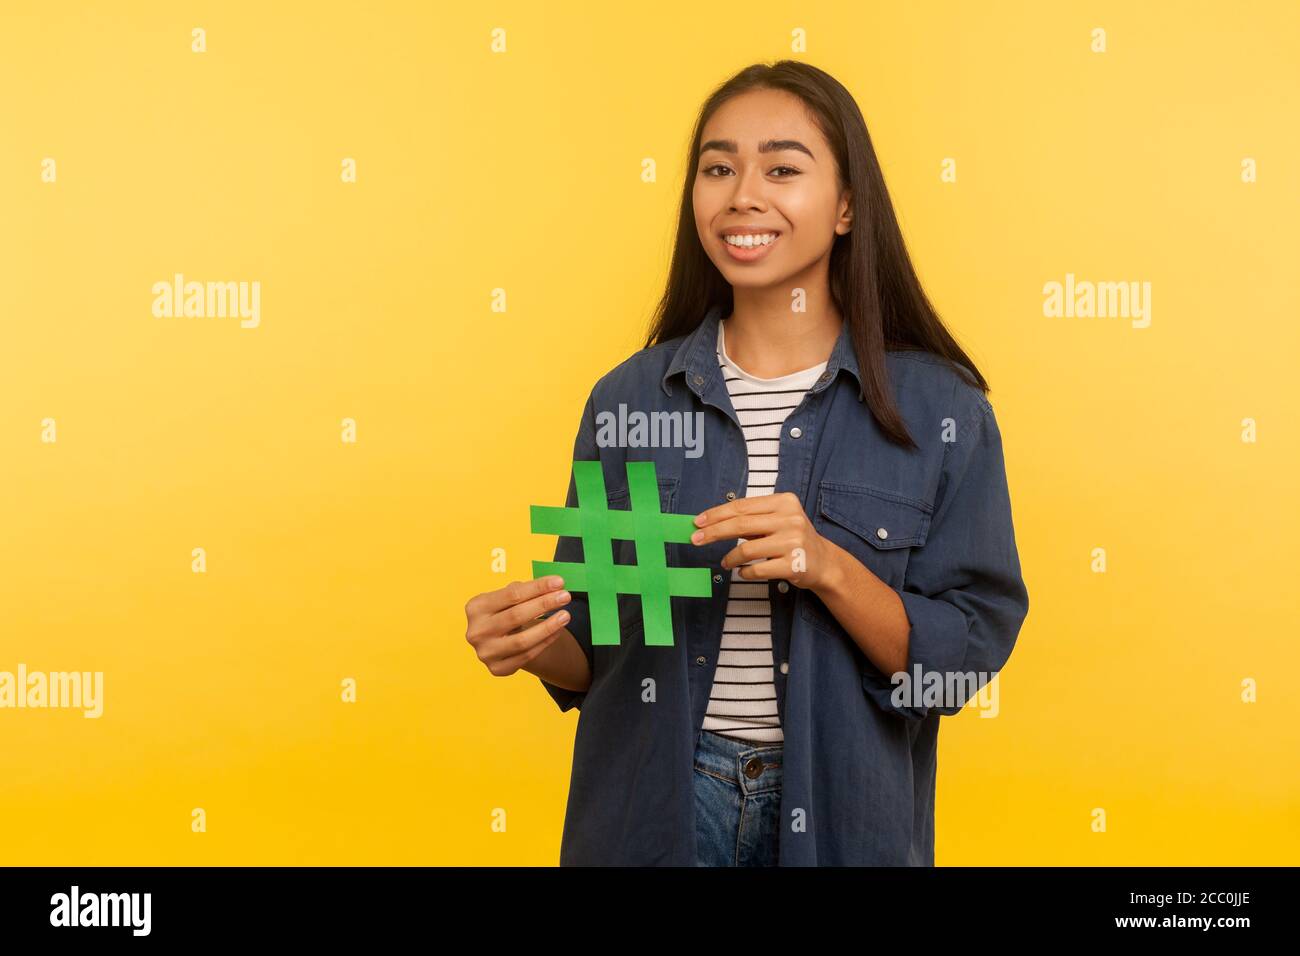 Populäre Internet-Idee, virales Thema. Portrait von glücklichen Mädchen in Denim-Shirt mit Hashtag Symbol und lächeln zur Kamera, Förderung Blog, Web-Trends. In Stockfoto